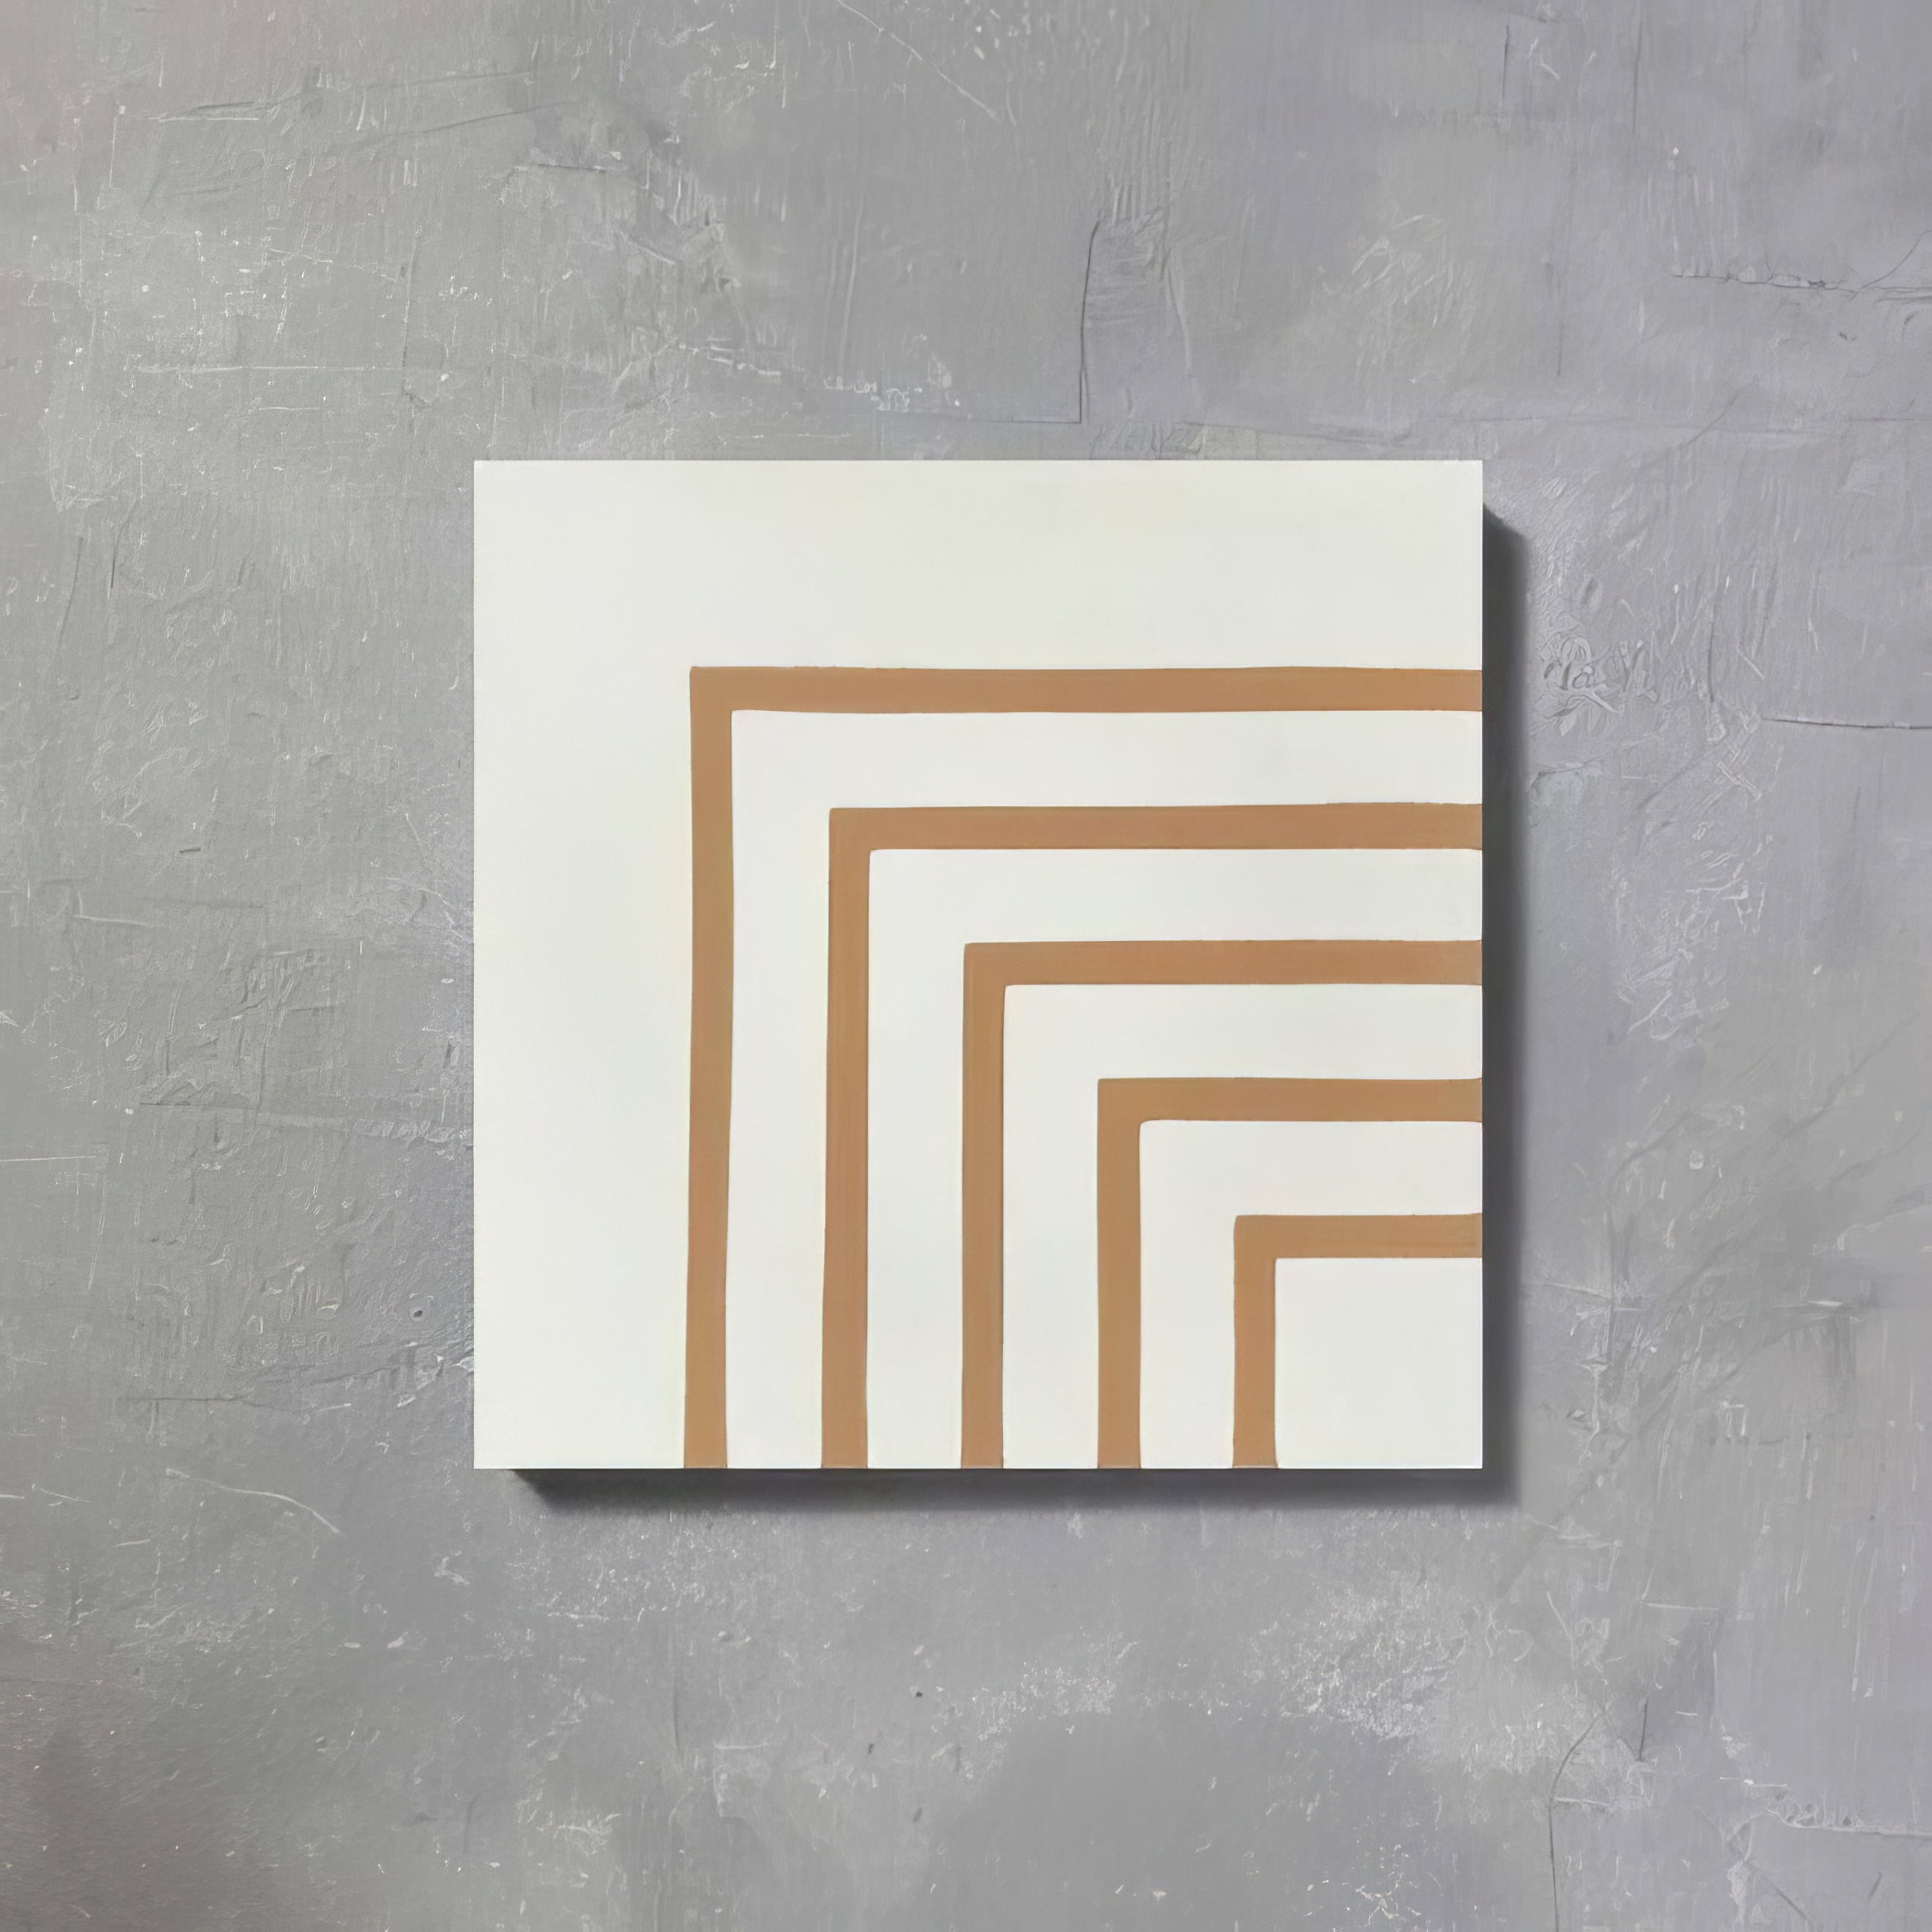 Marigold Maze One Tile - Hyperion Tiles